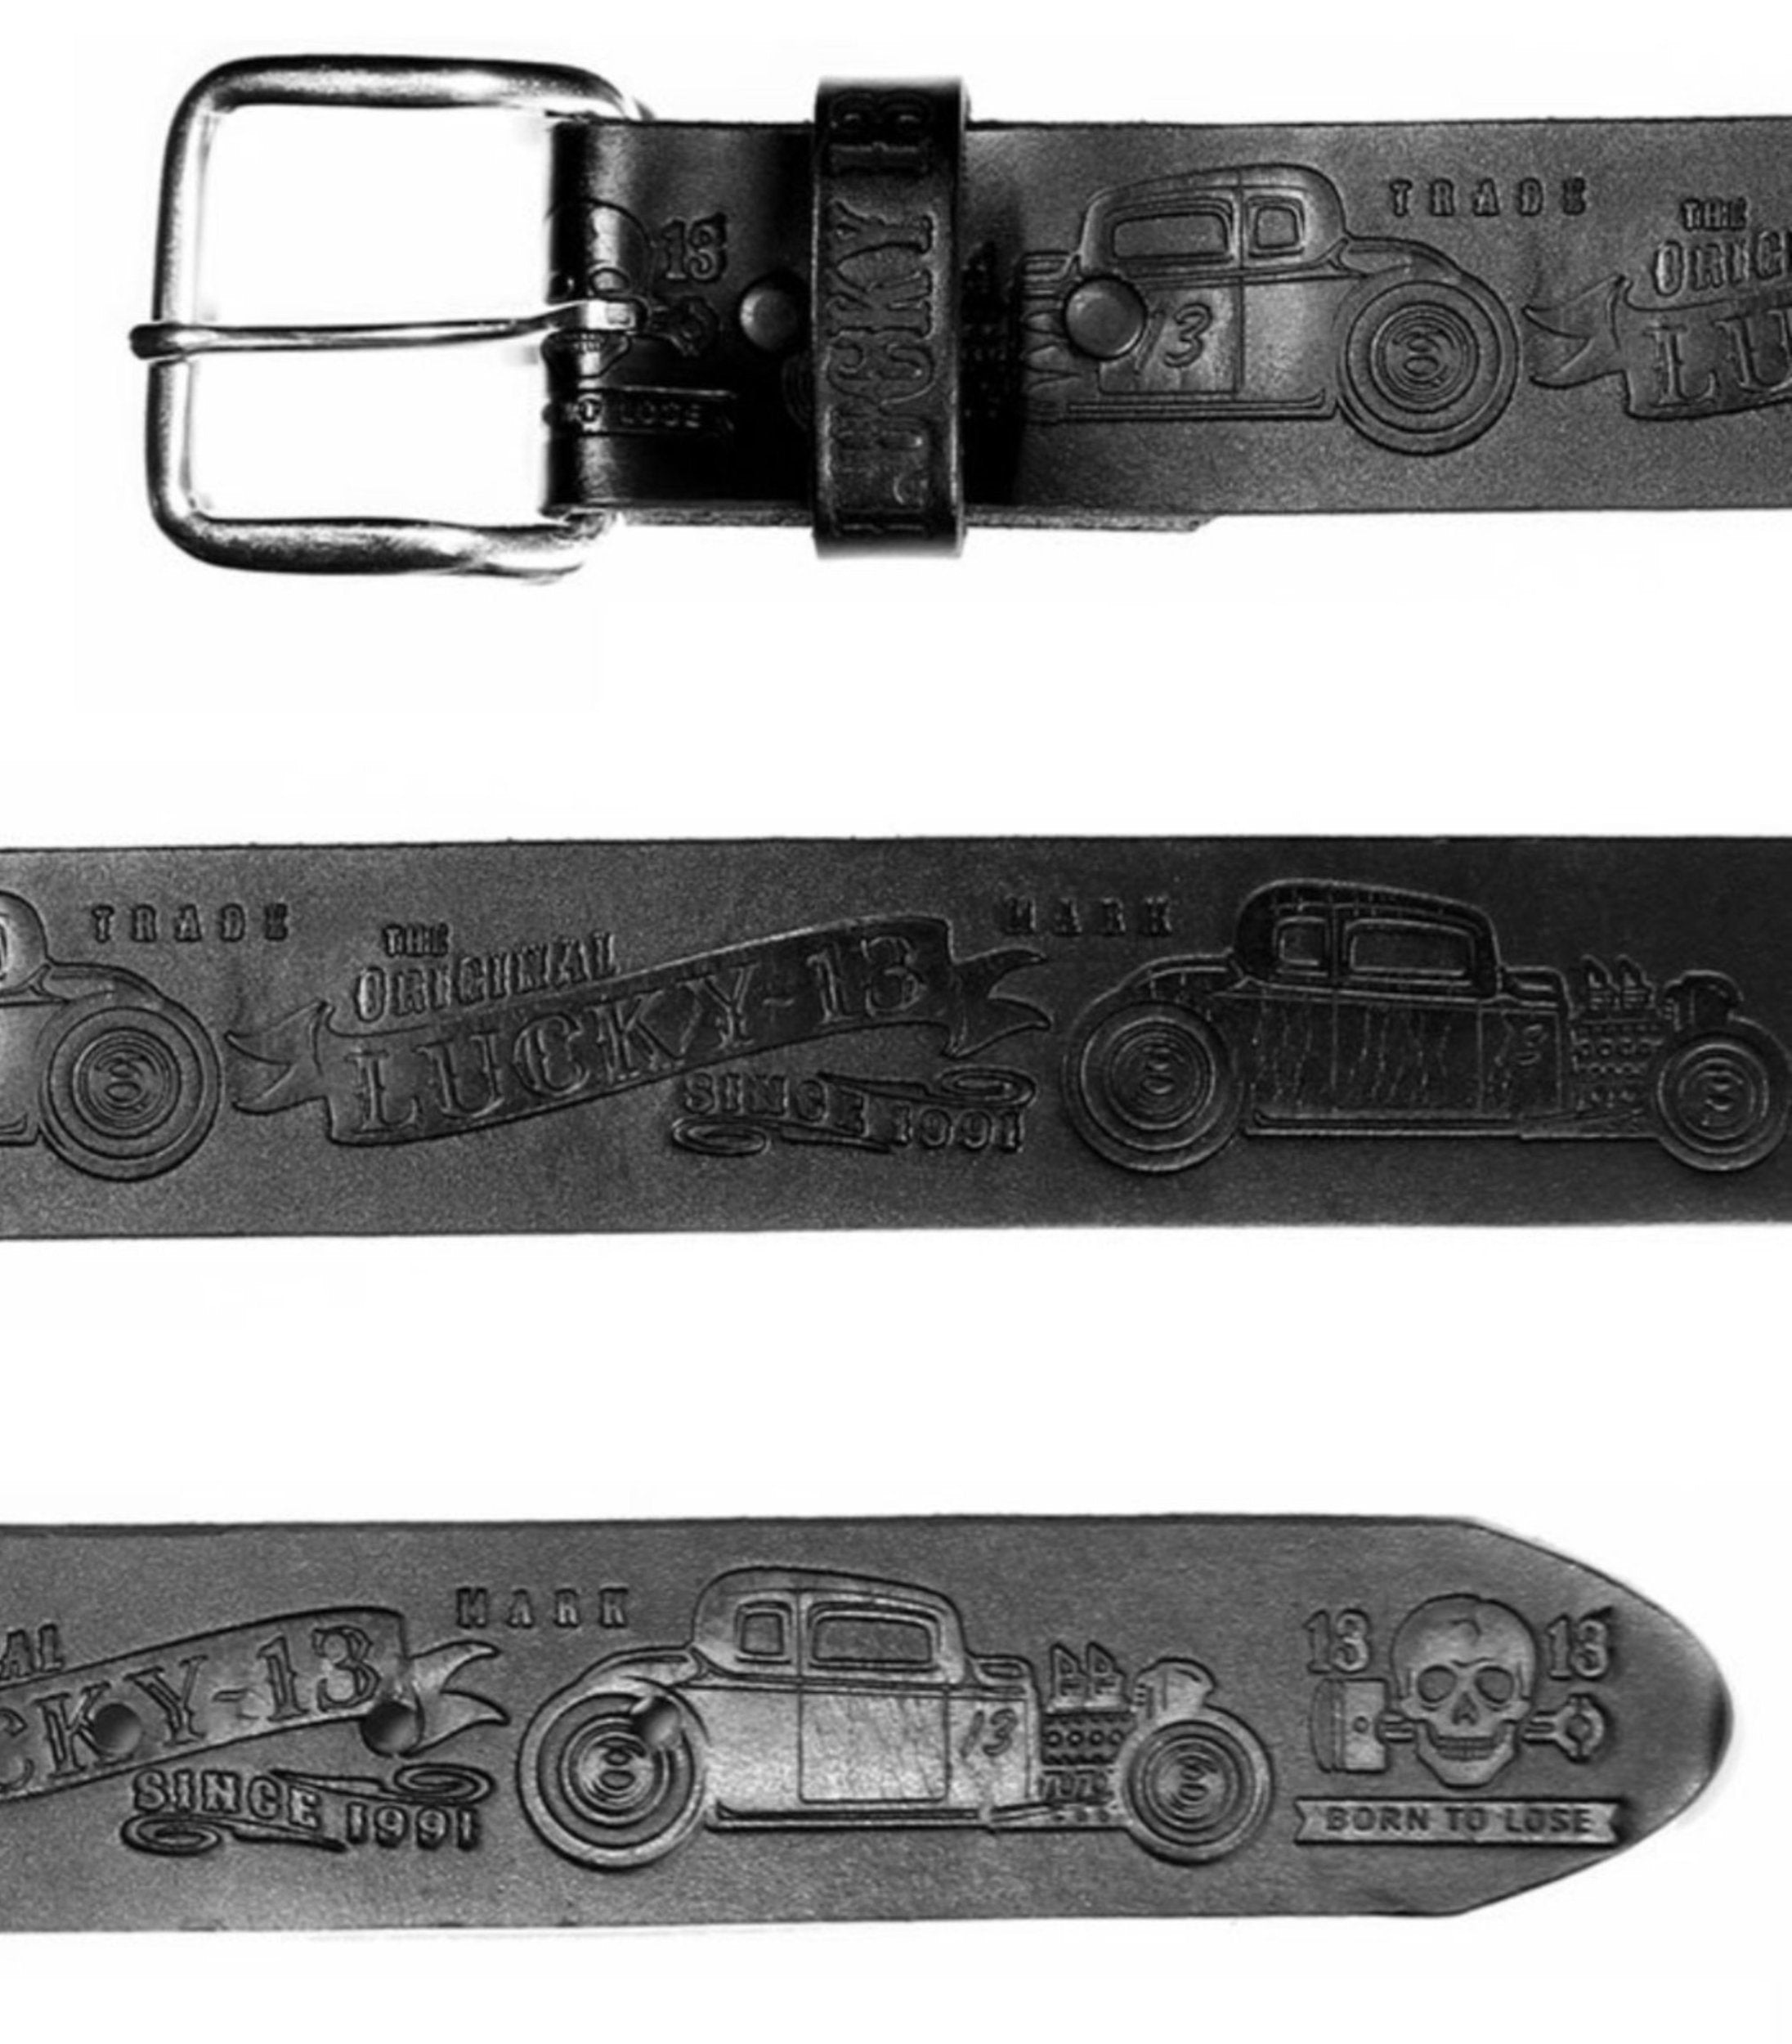 Customizable Leather Belt 85 – Fauré Le Page